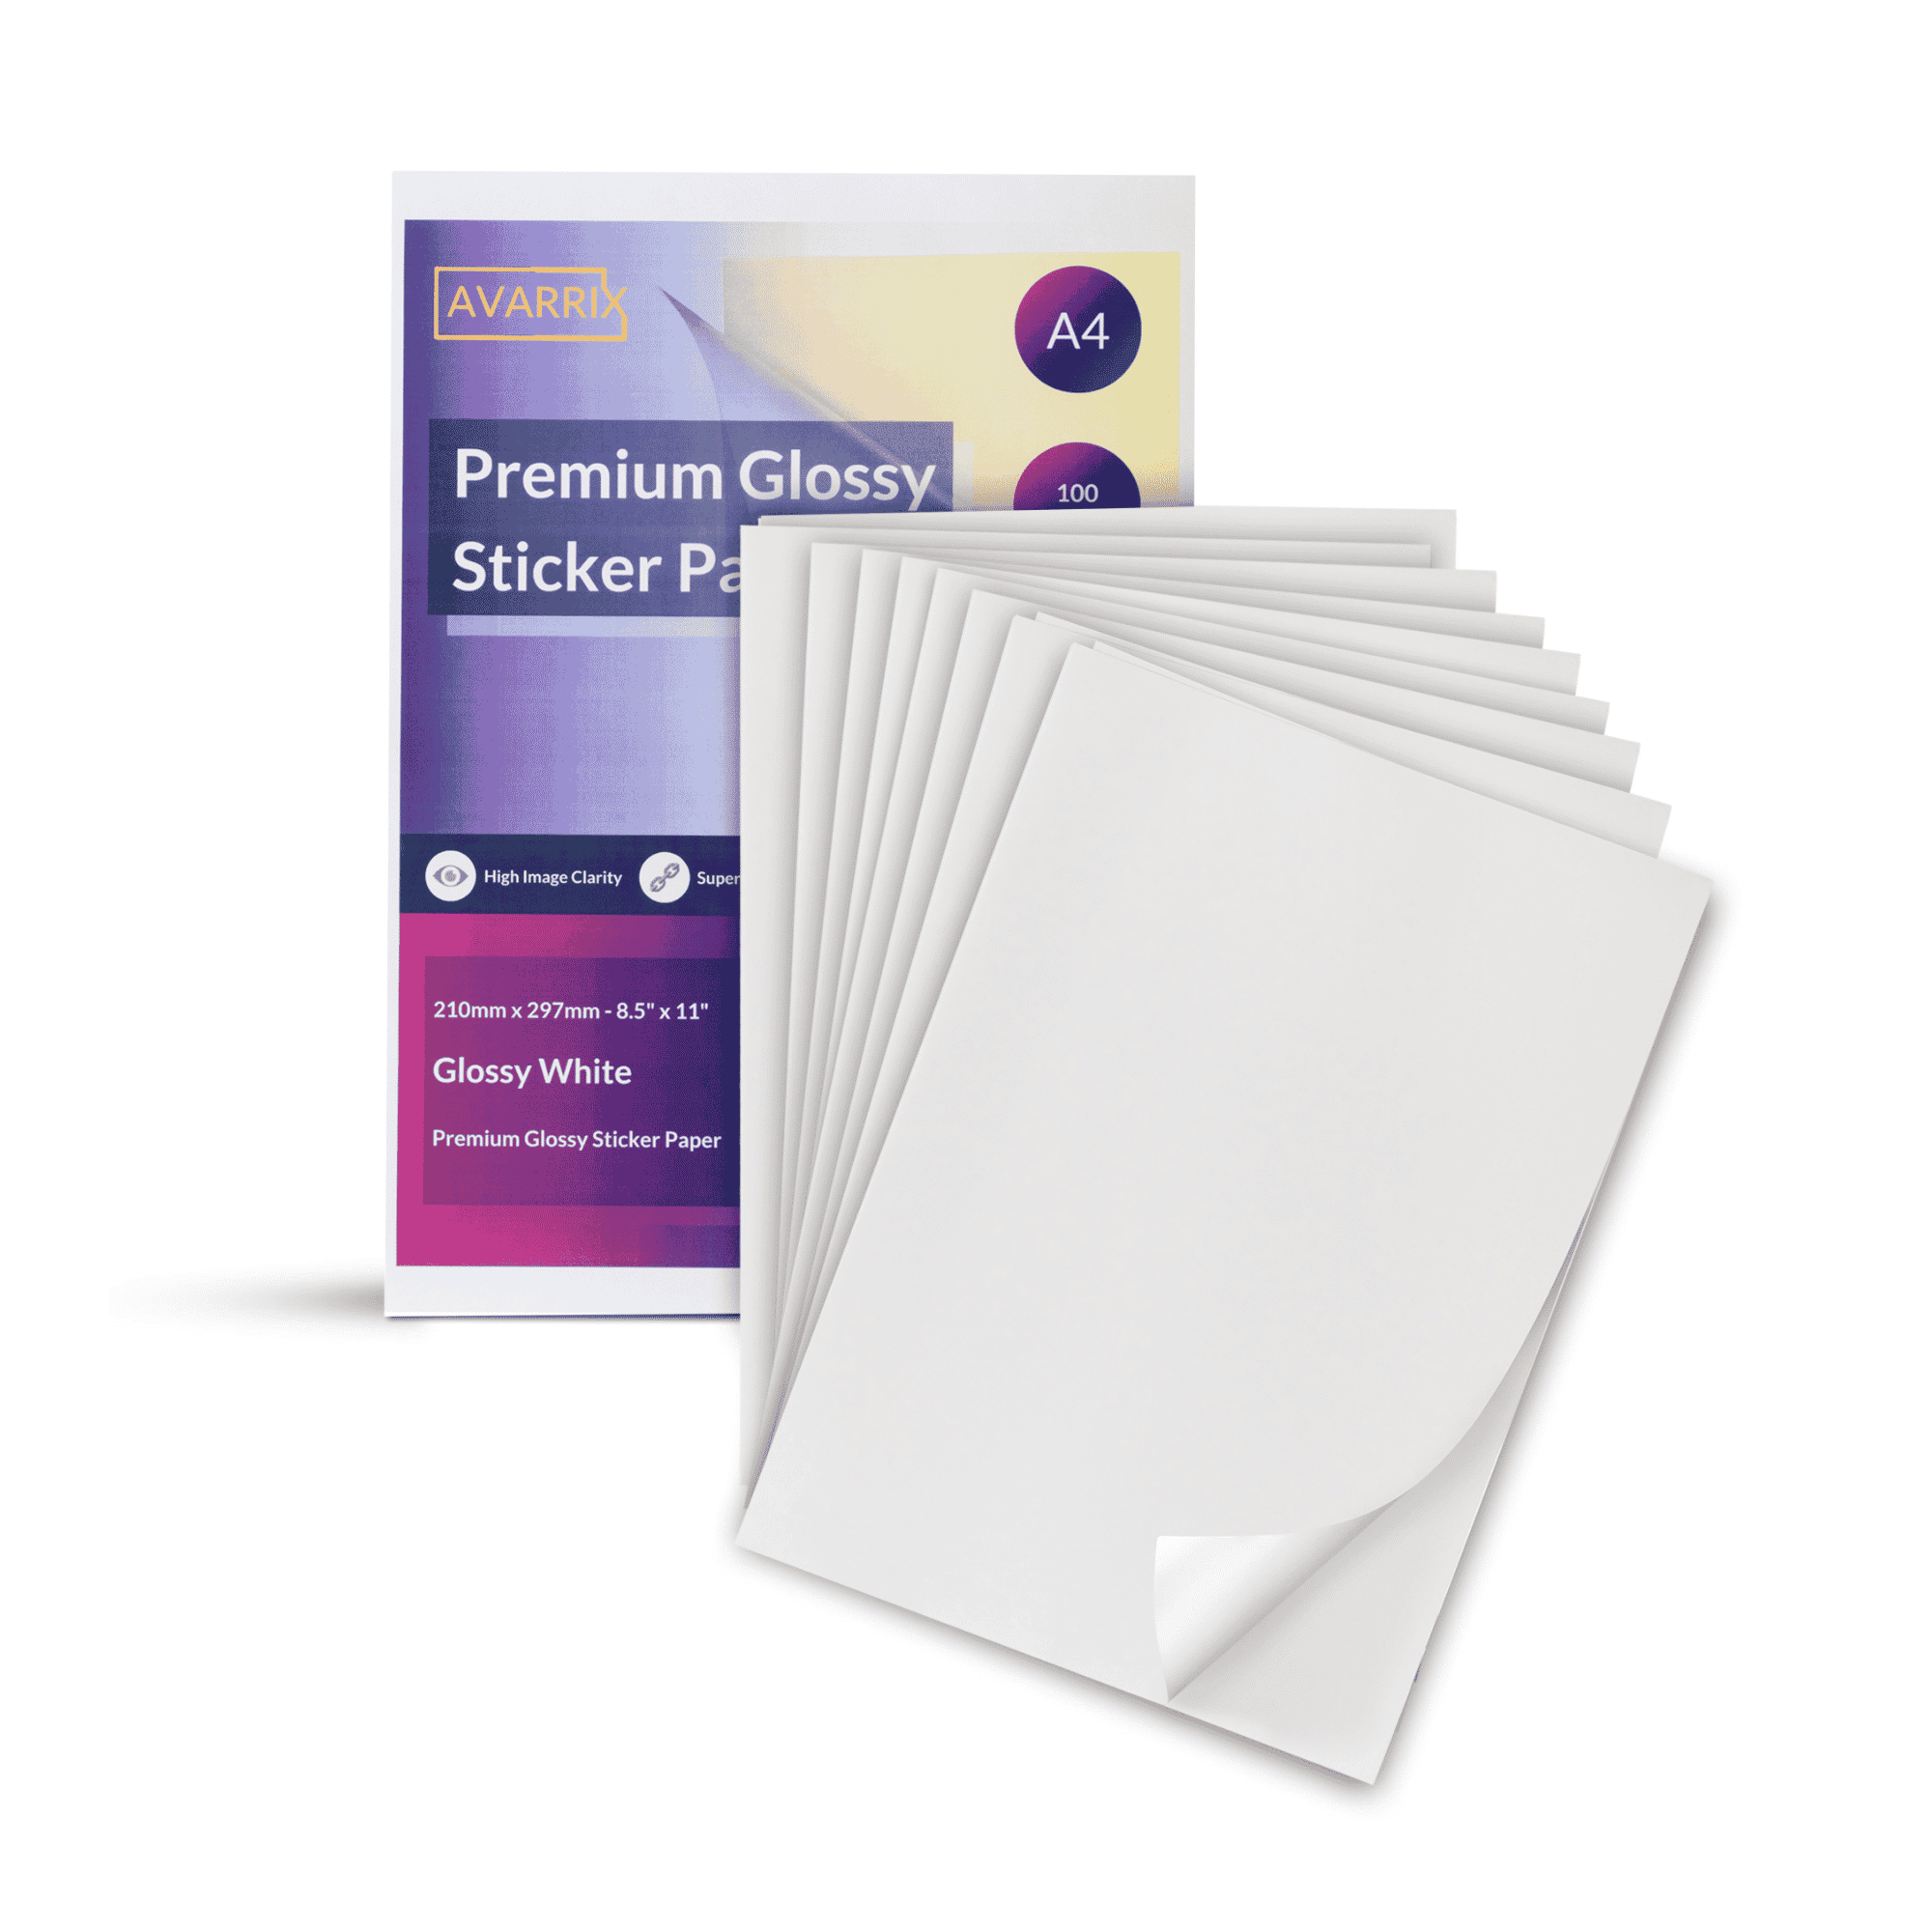  Premium Printable Vinyl Sticker Paper for Your Inkjet